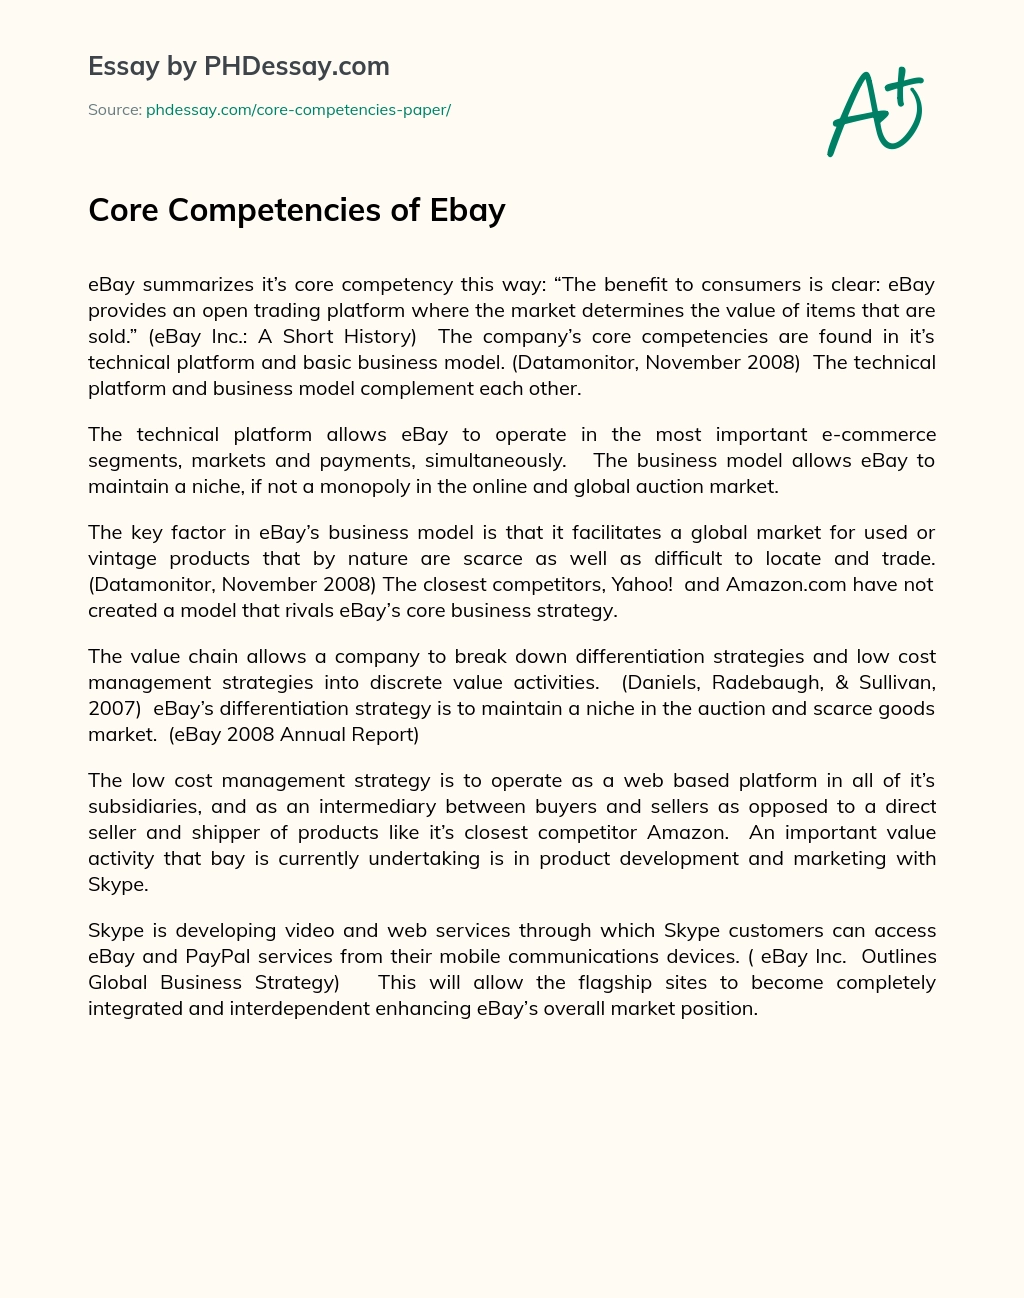 Core Competencies of Ebay essay